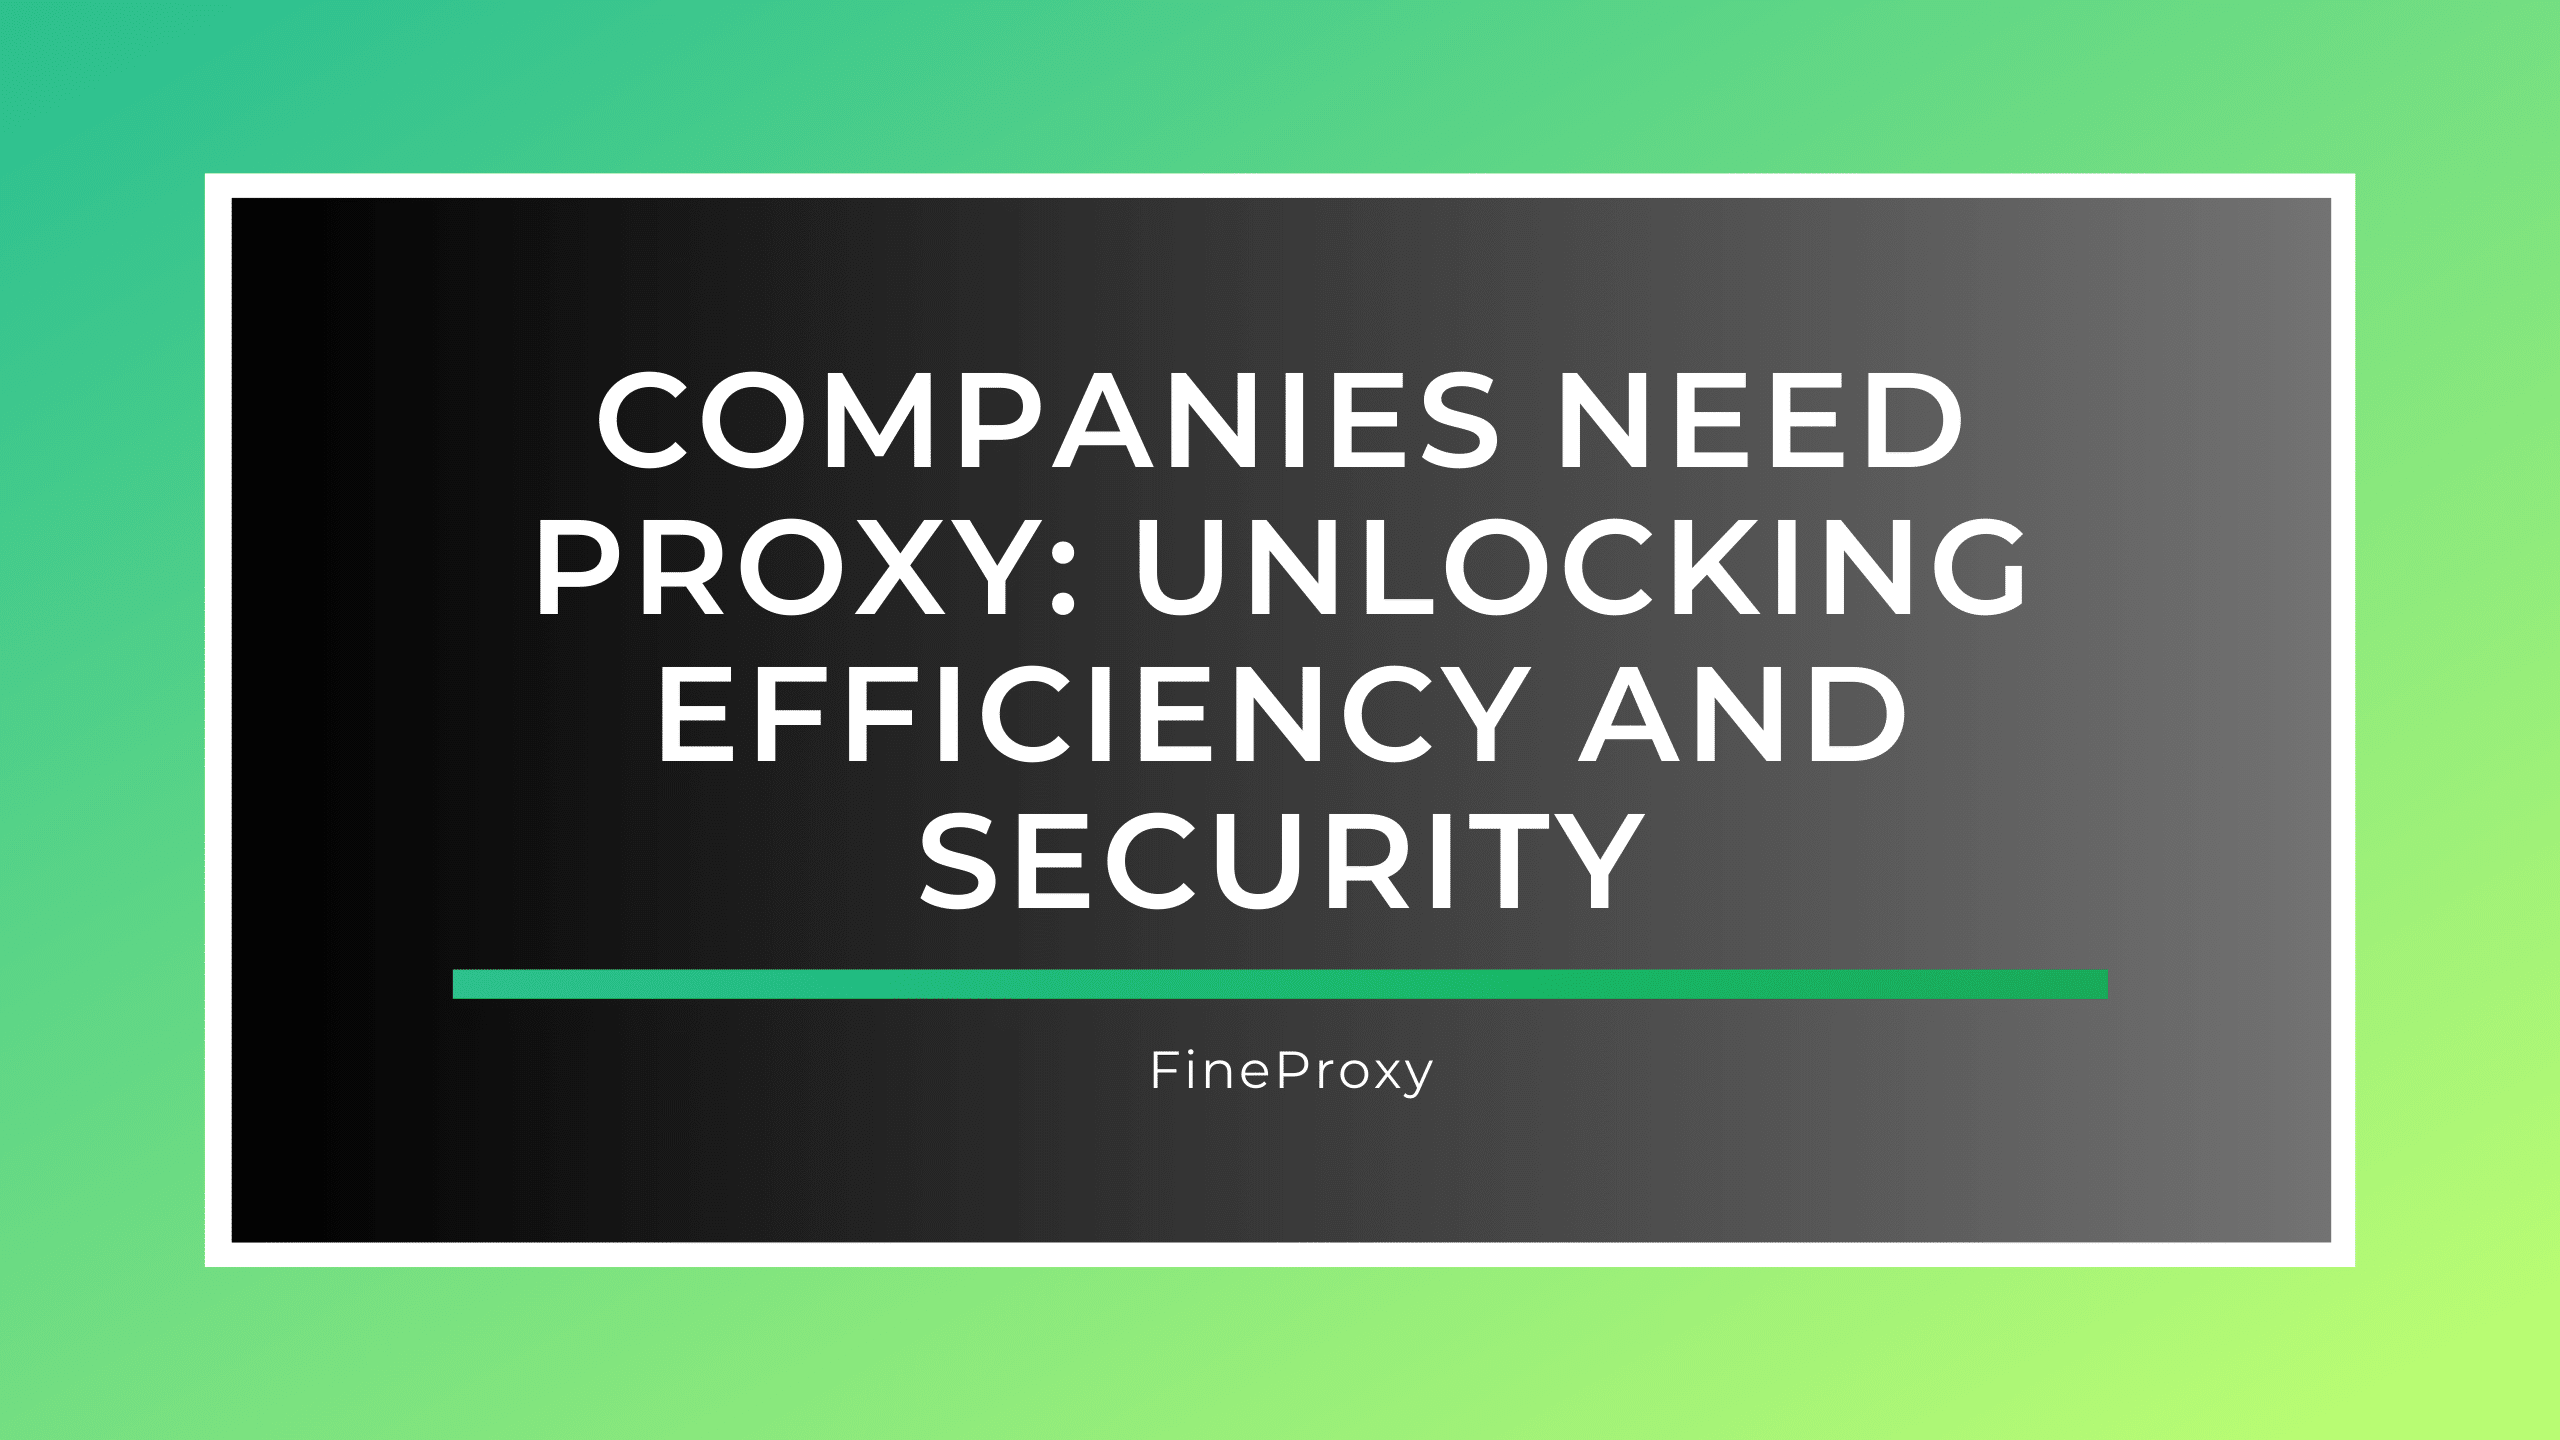 As empresas precisam de proxy: liberando eficiência e segurança